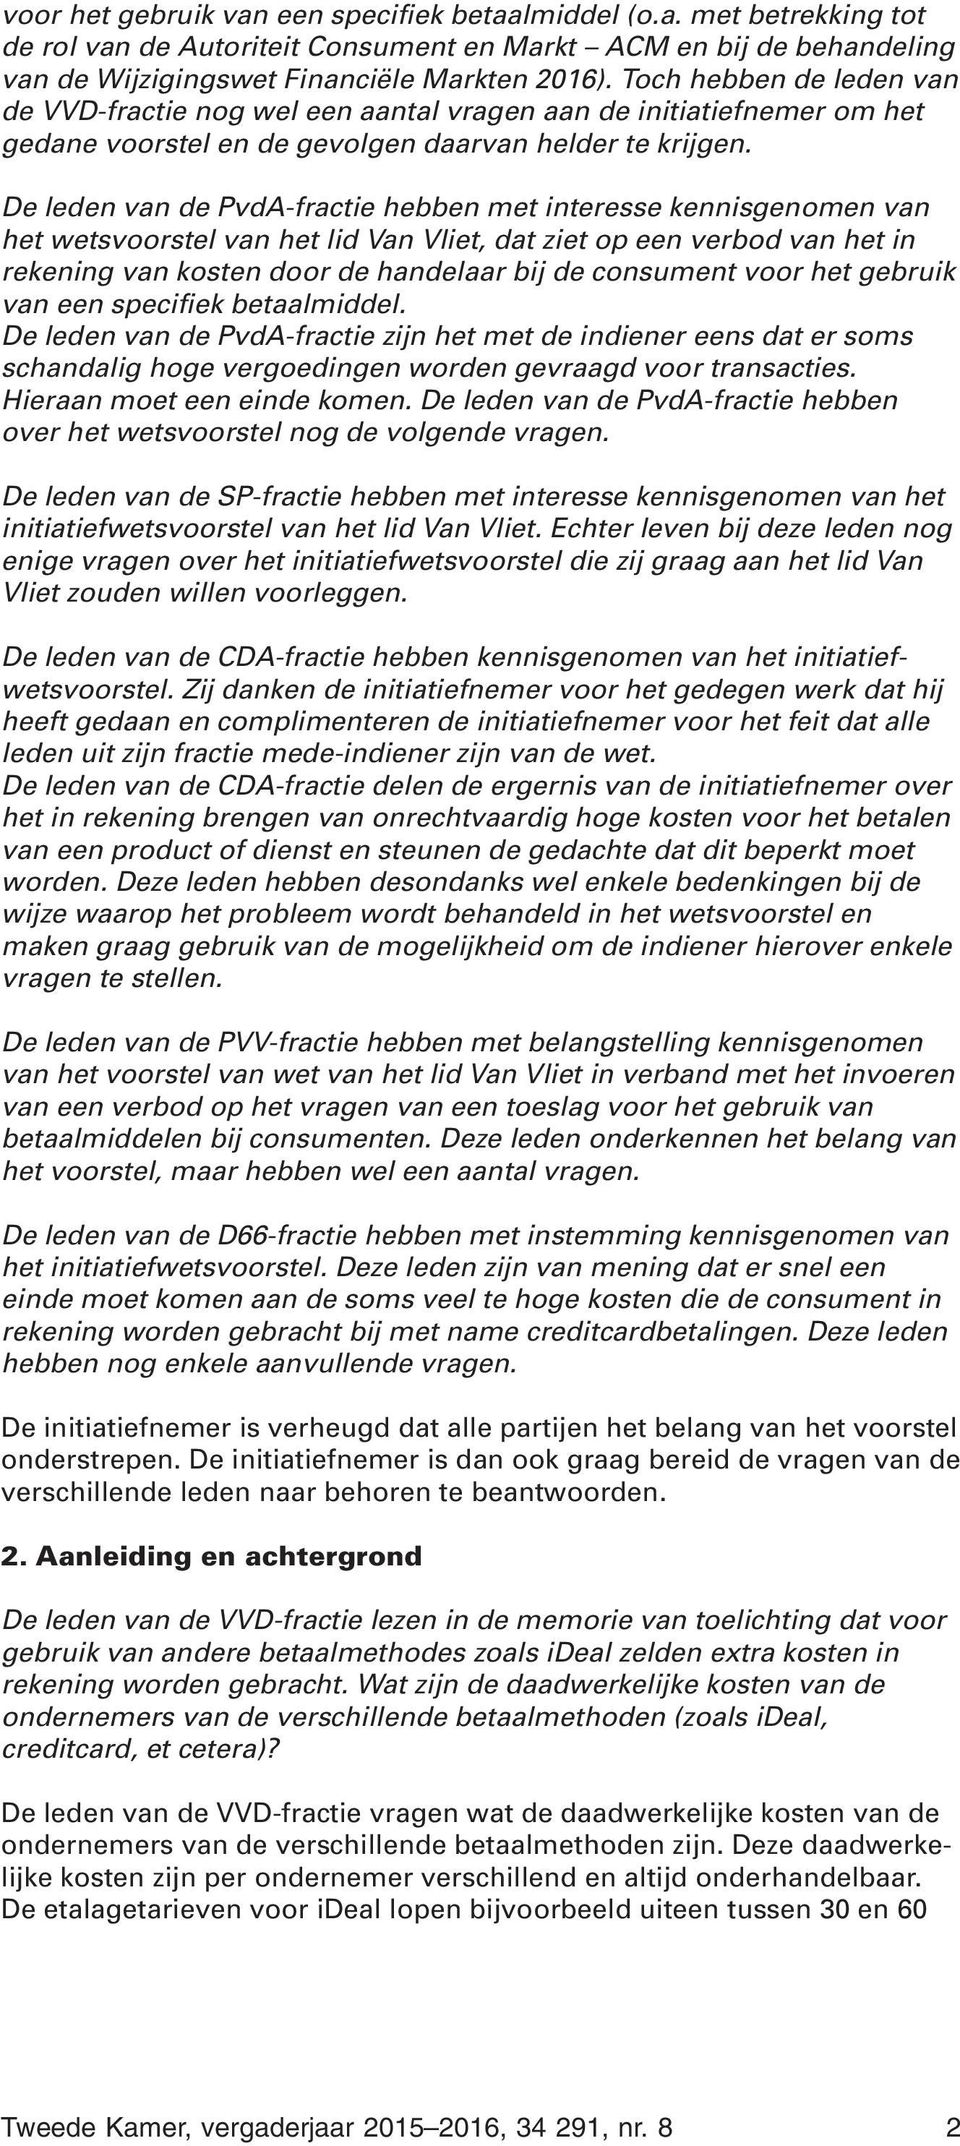 De leden van de PvdA-fractie hebben met interesse kennisgenomen van het wetsvoorstel van het lid Van Vliet, dat ziet op een verbod van het in rekening van kosten door de handelaar bij de consument